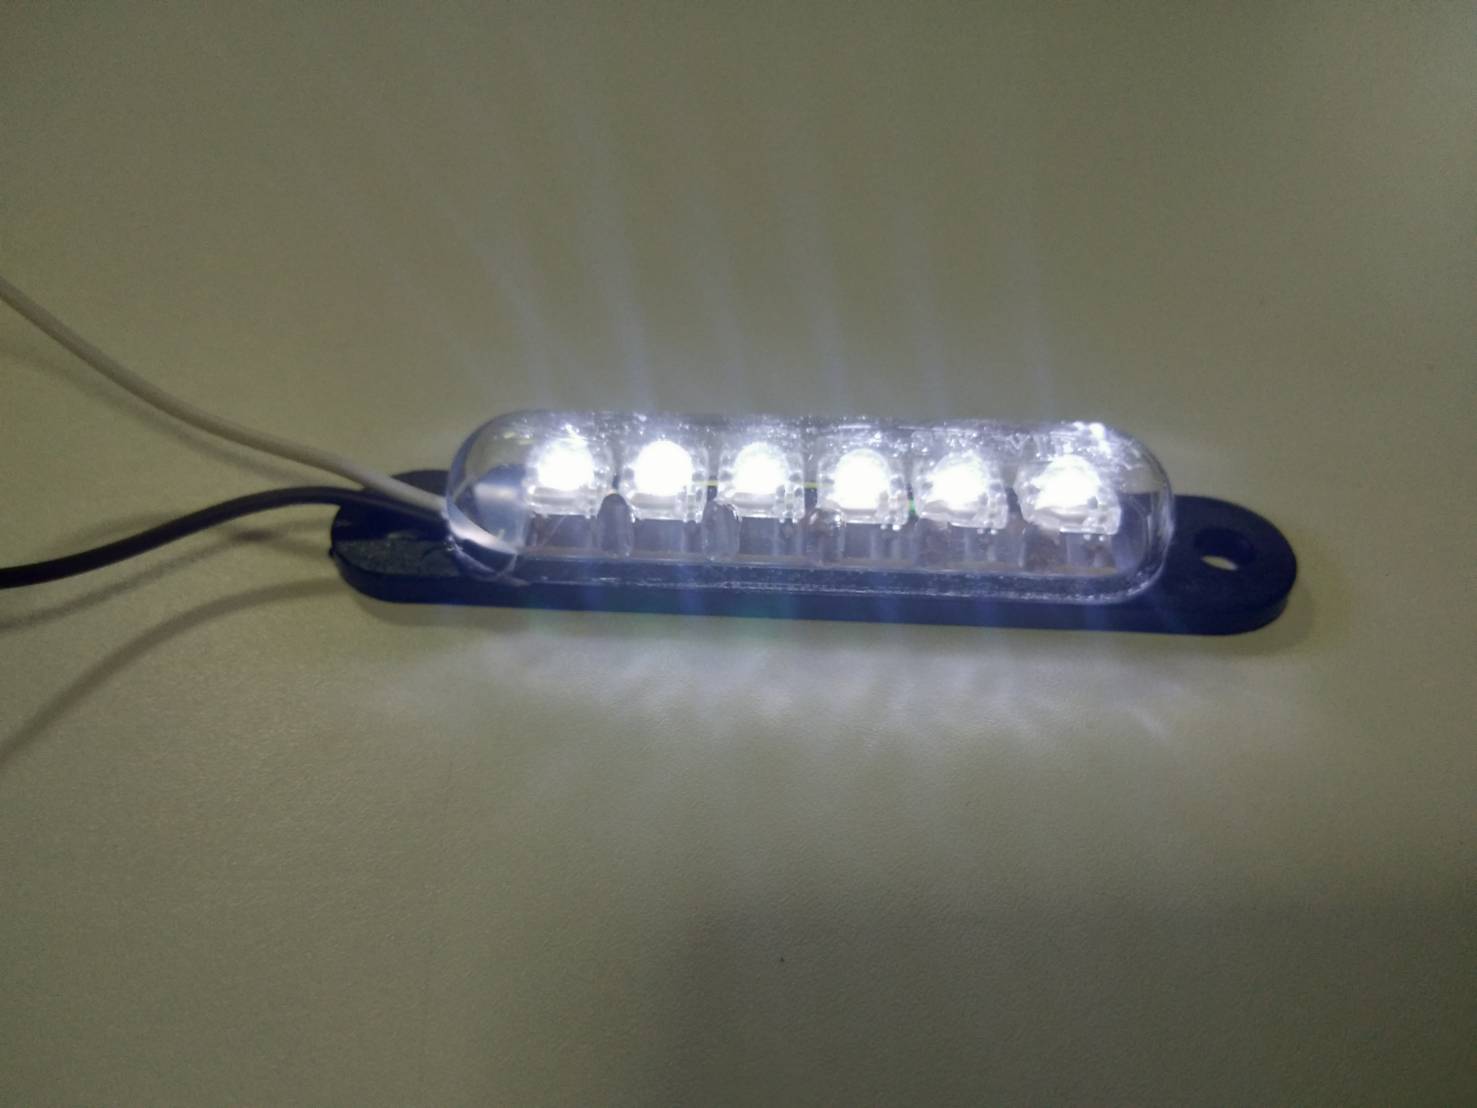 ไฟ LED แคปซูล6ดวง 12v มีให้เลือก 7 สี (จำนวน1ชิ้น)